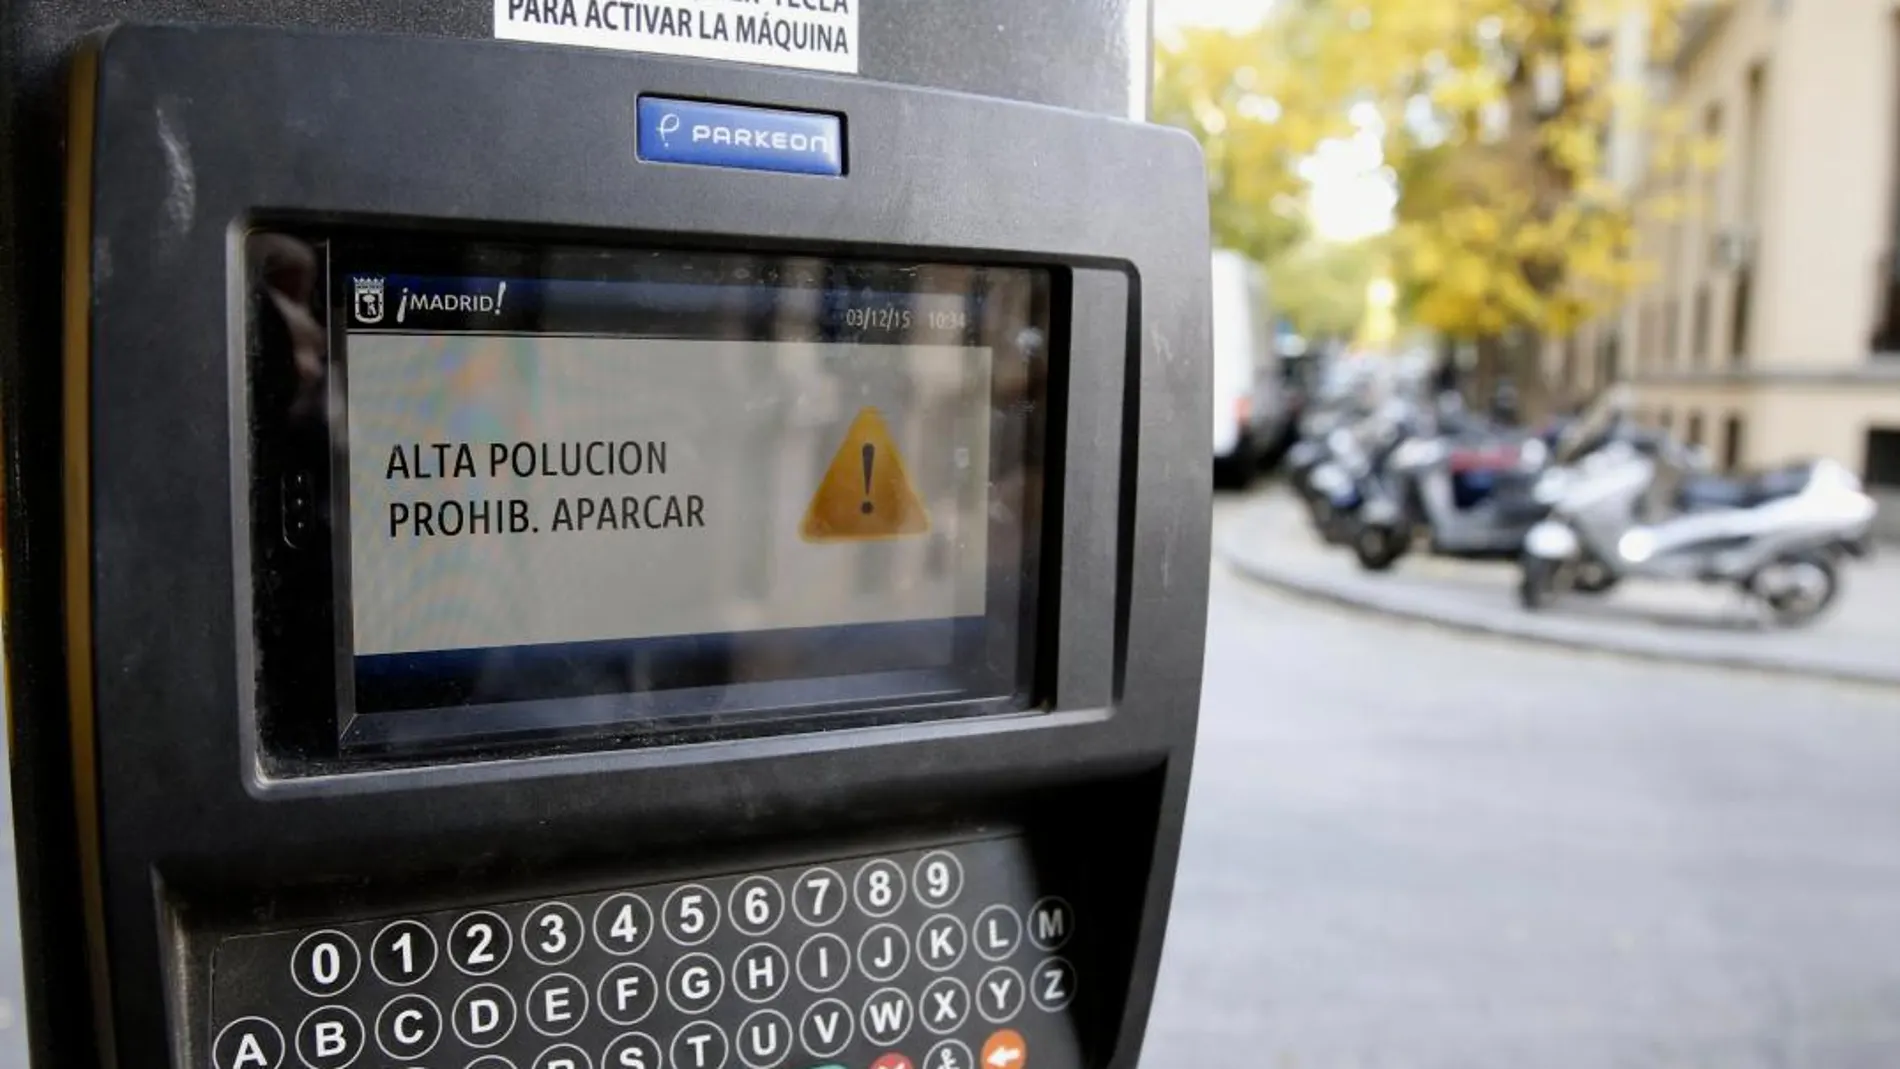 Detalle de la pantalla de un parquímetro que anuncia la prohibición de aparcar por alta polución.